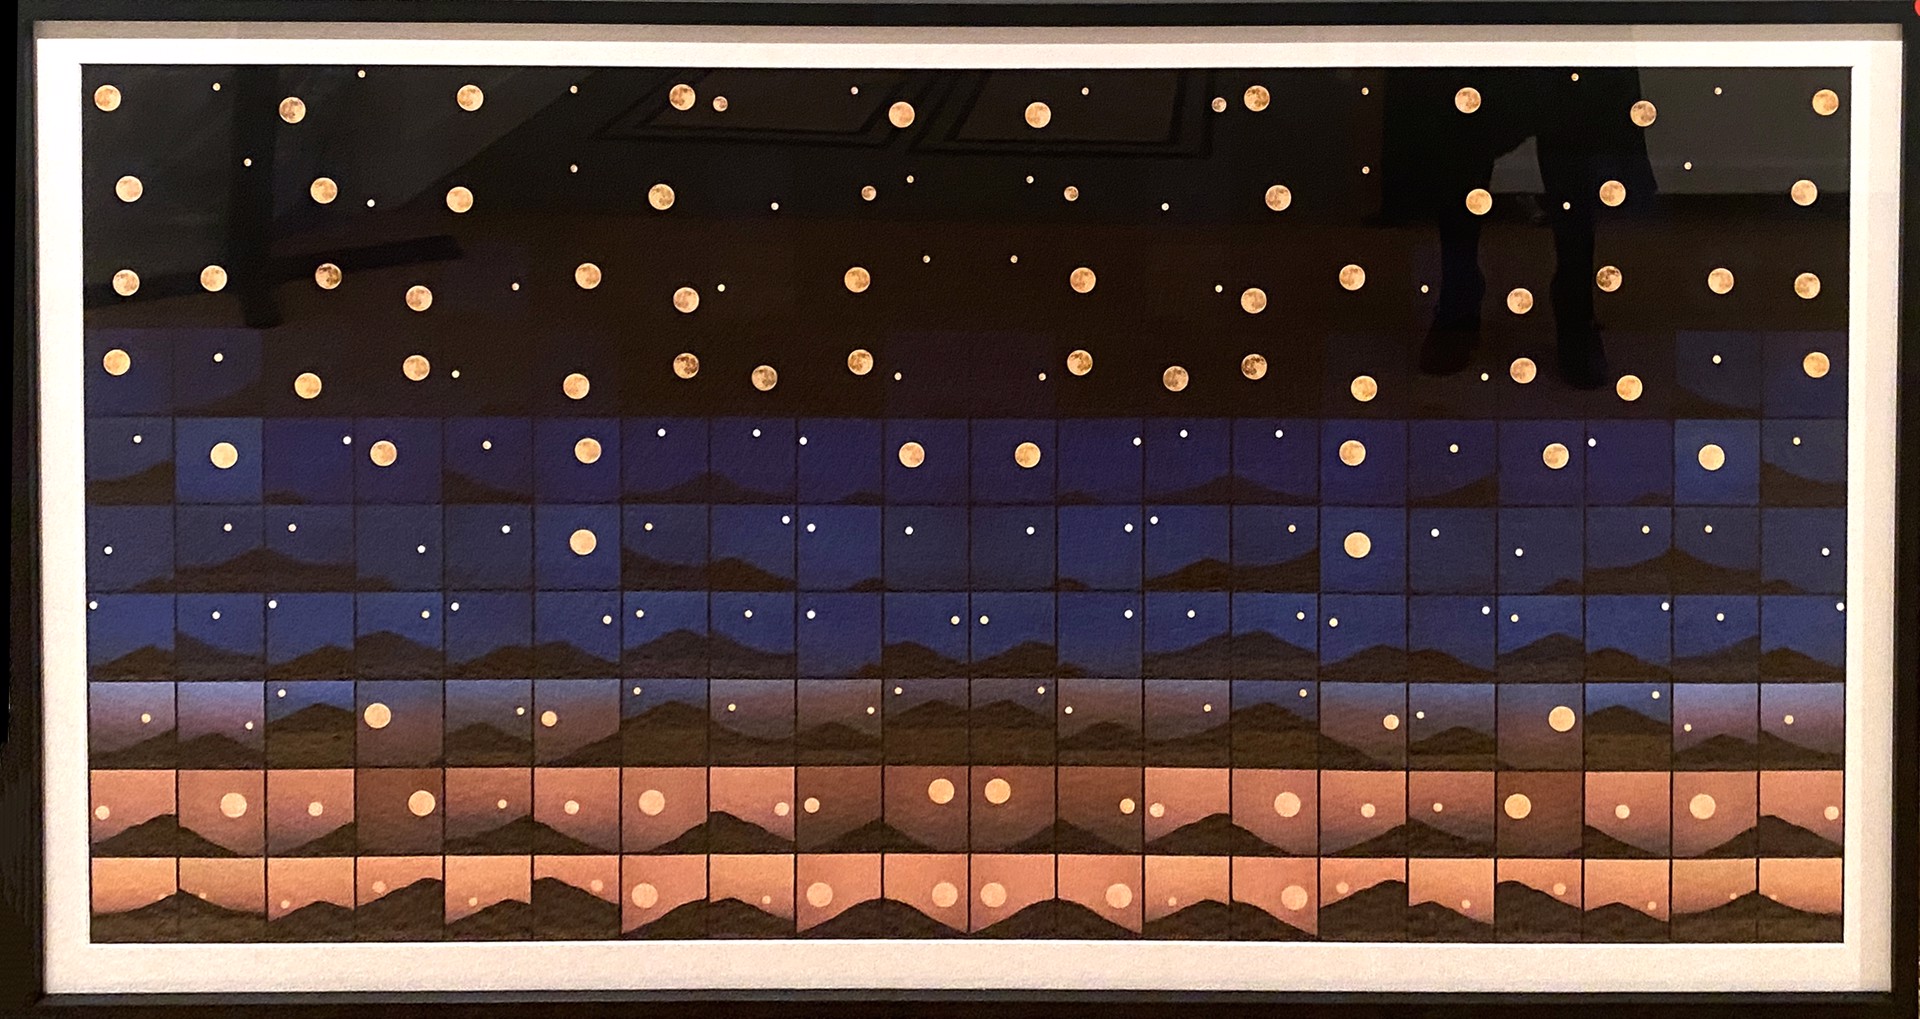 200 Moons by E. Dan Klepper